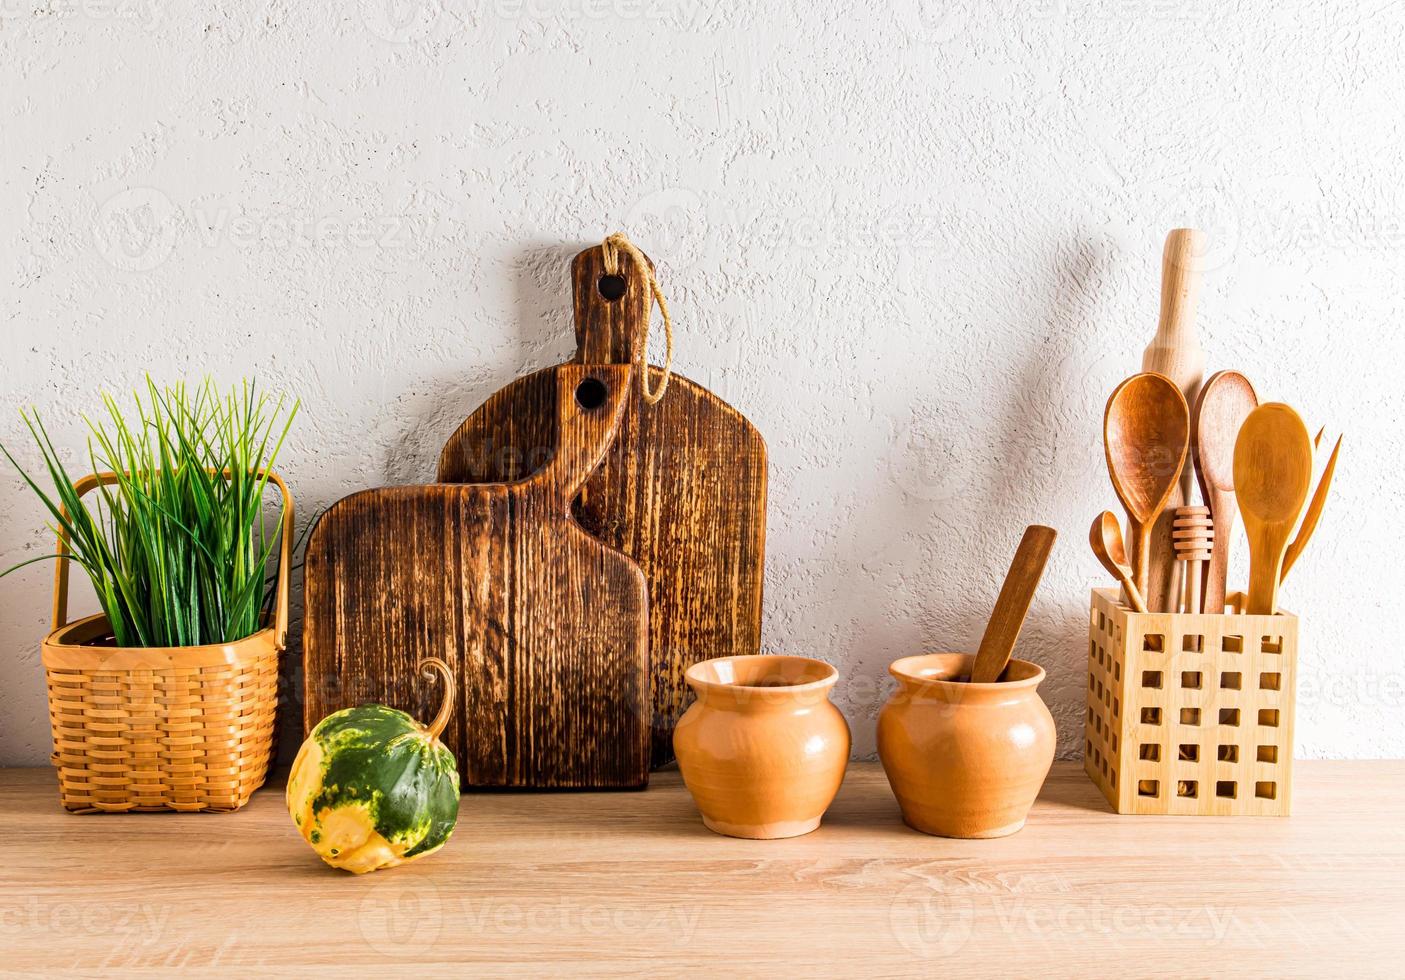 decoración de la cocina casera de una casa de campo. vista frontal de una encimera de madera con utensilios de cocina hechos de materiales ecológicos. foto